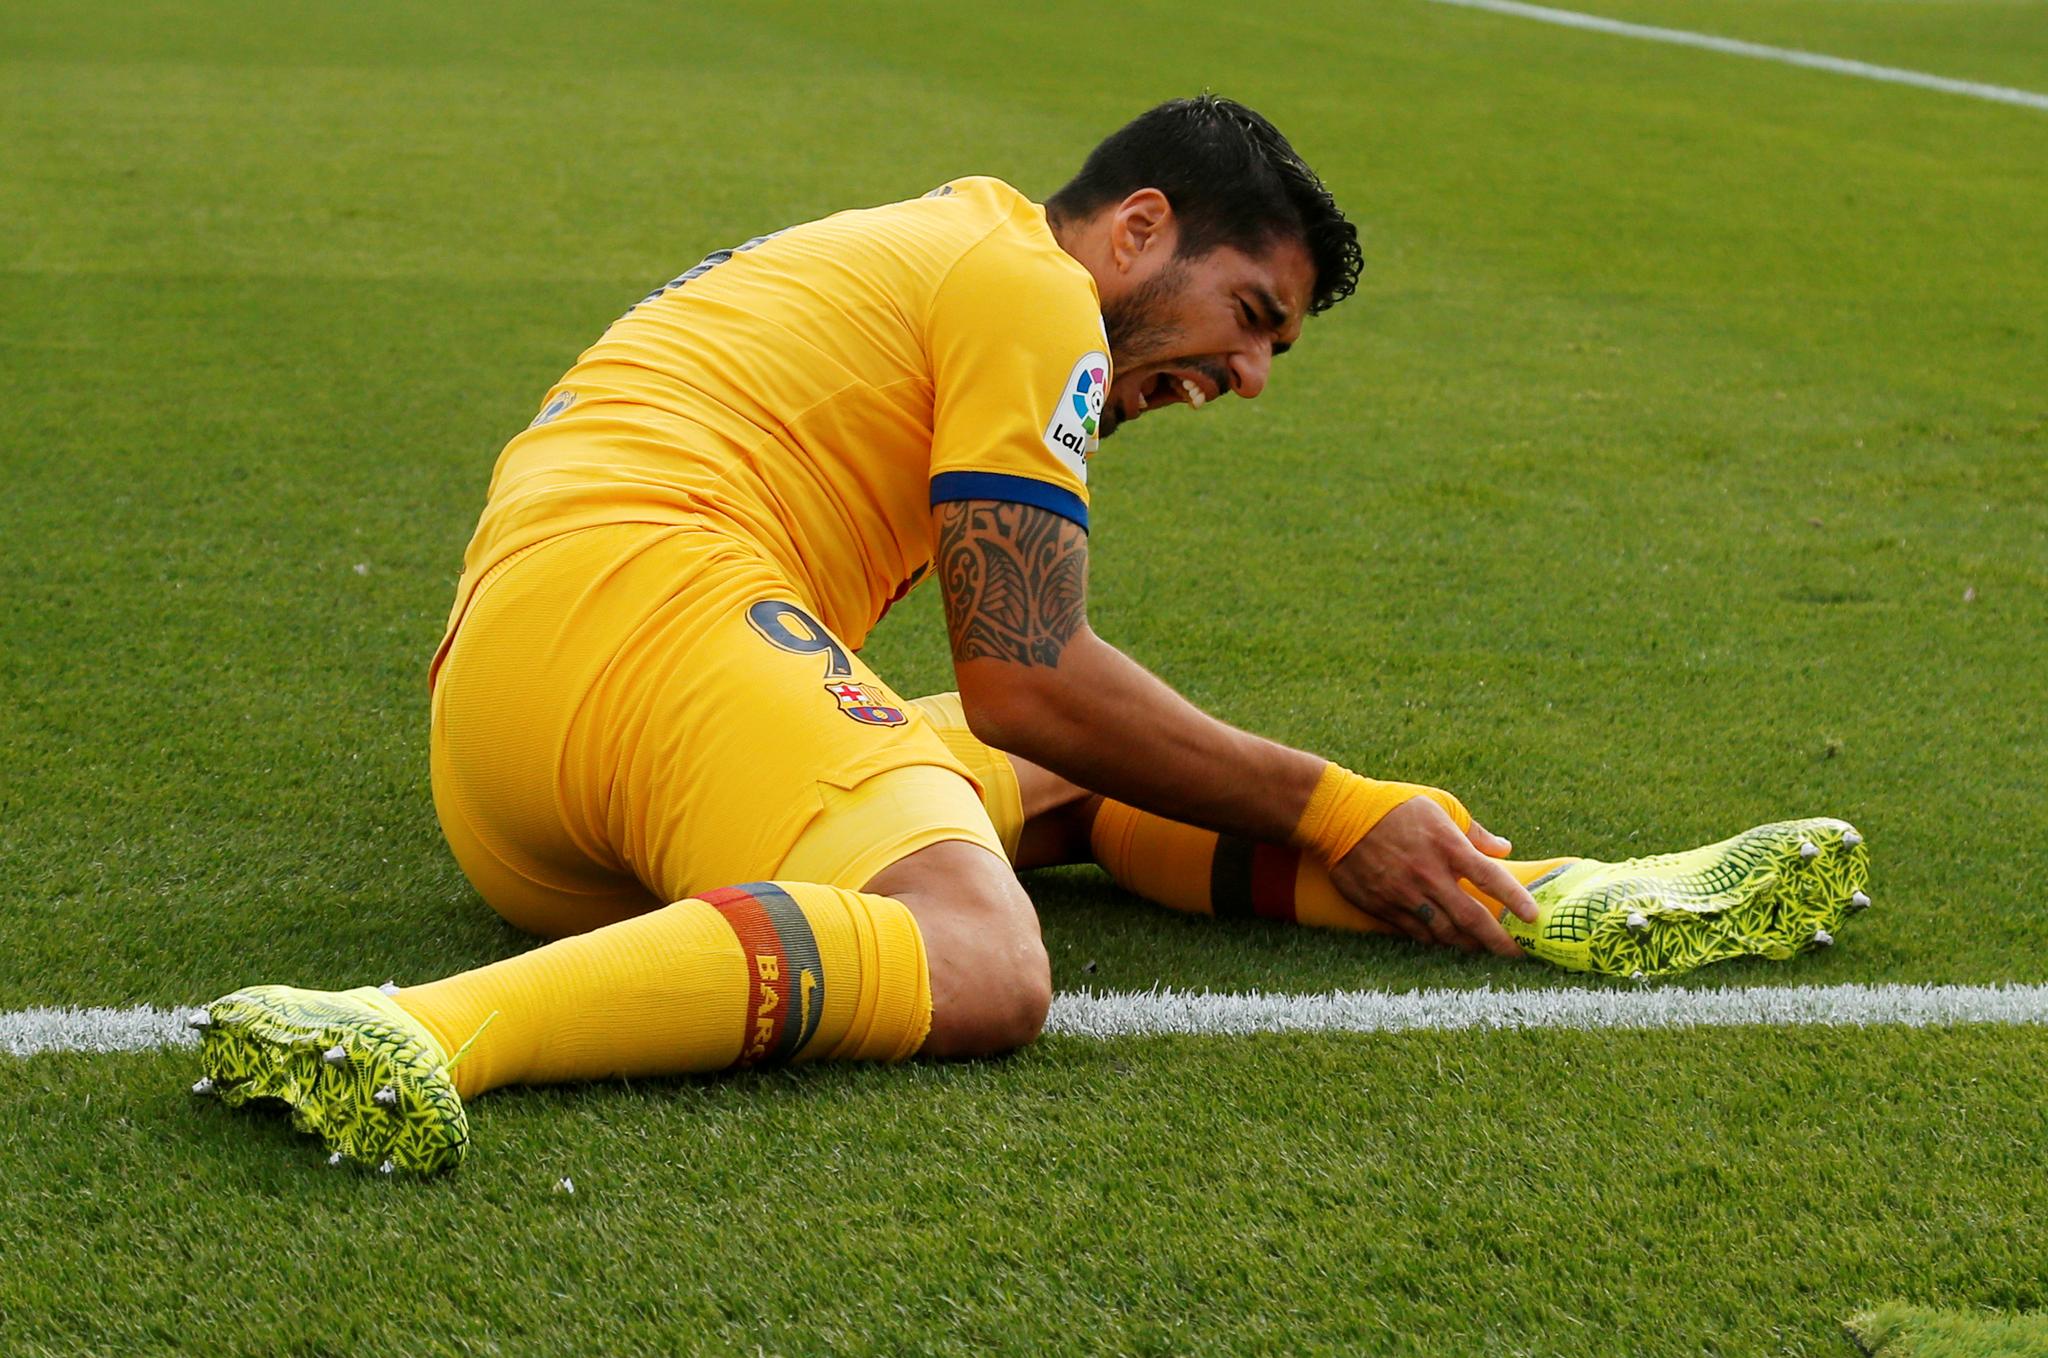  Luis Suárez måtte ut med en skade i leggen like før pause.